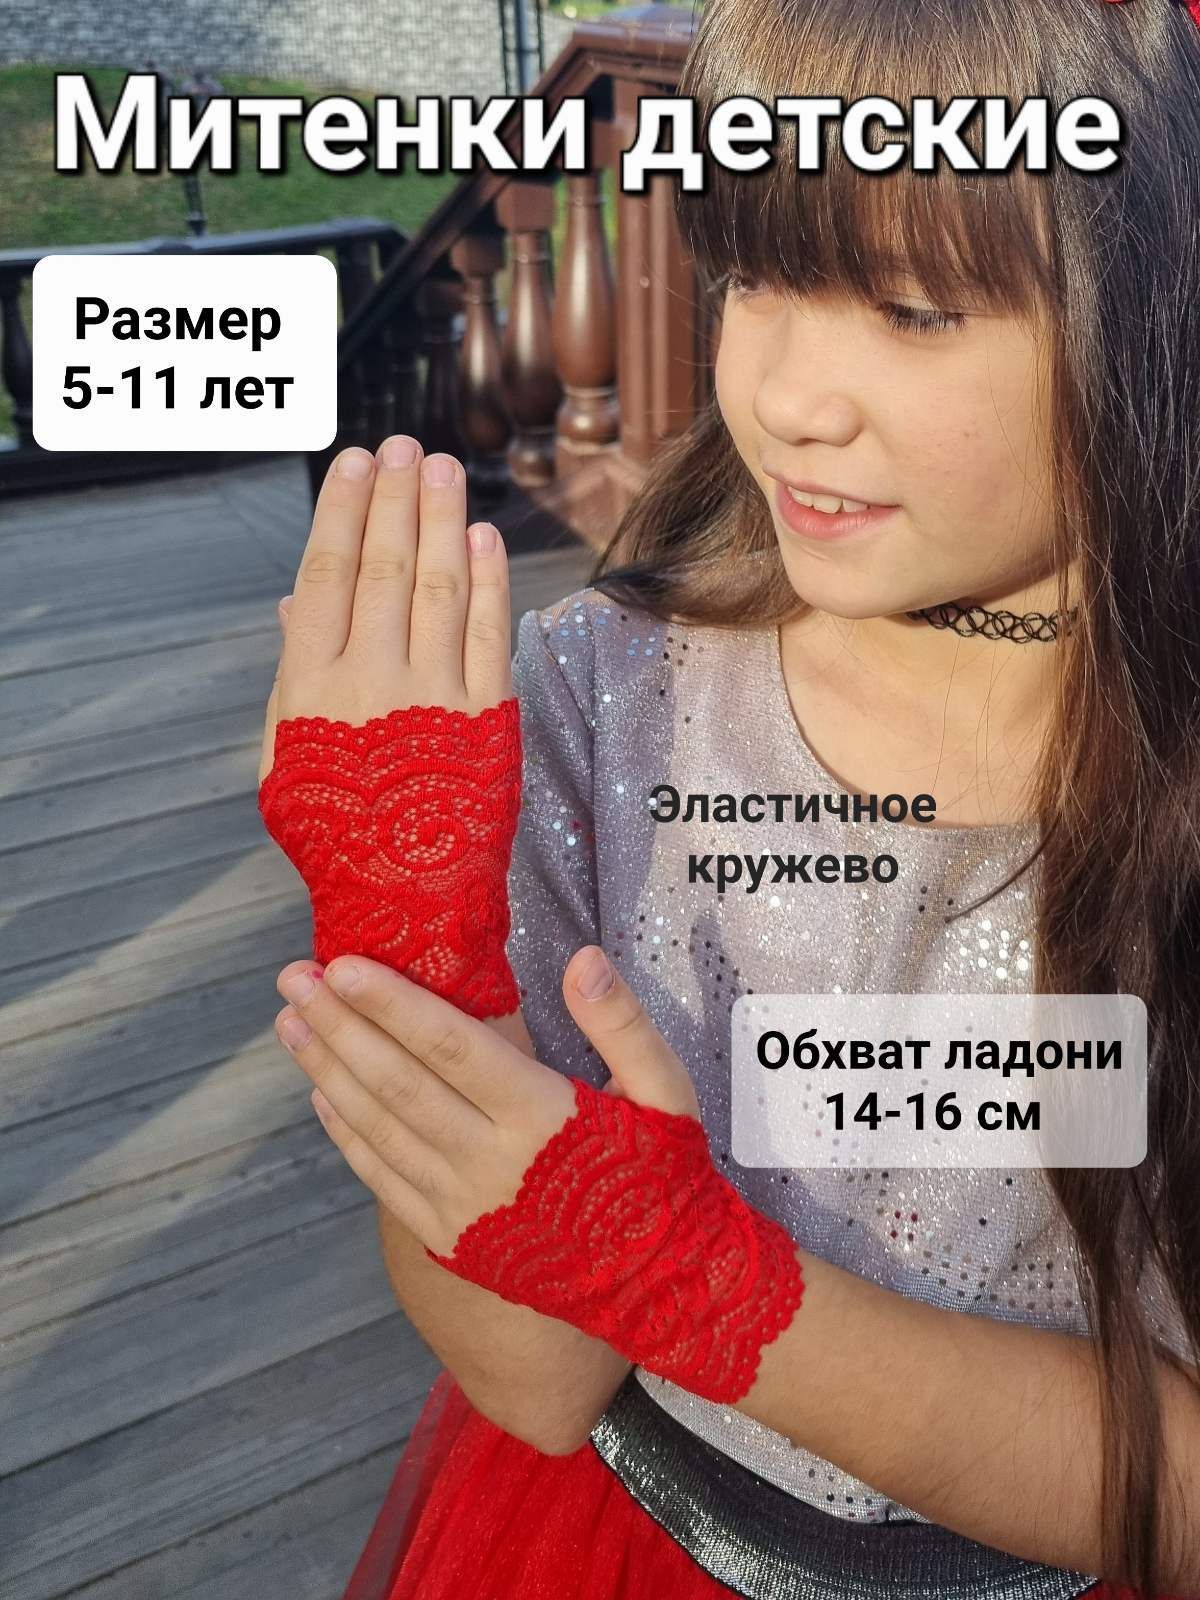 DIY: Декоративные перчатки своими руками. Самый простой способ сшить перчатки 😍🖤